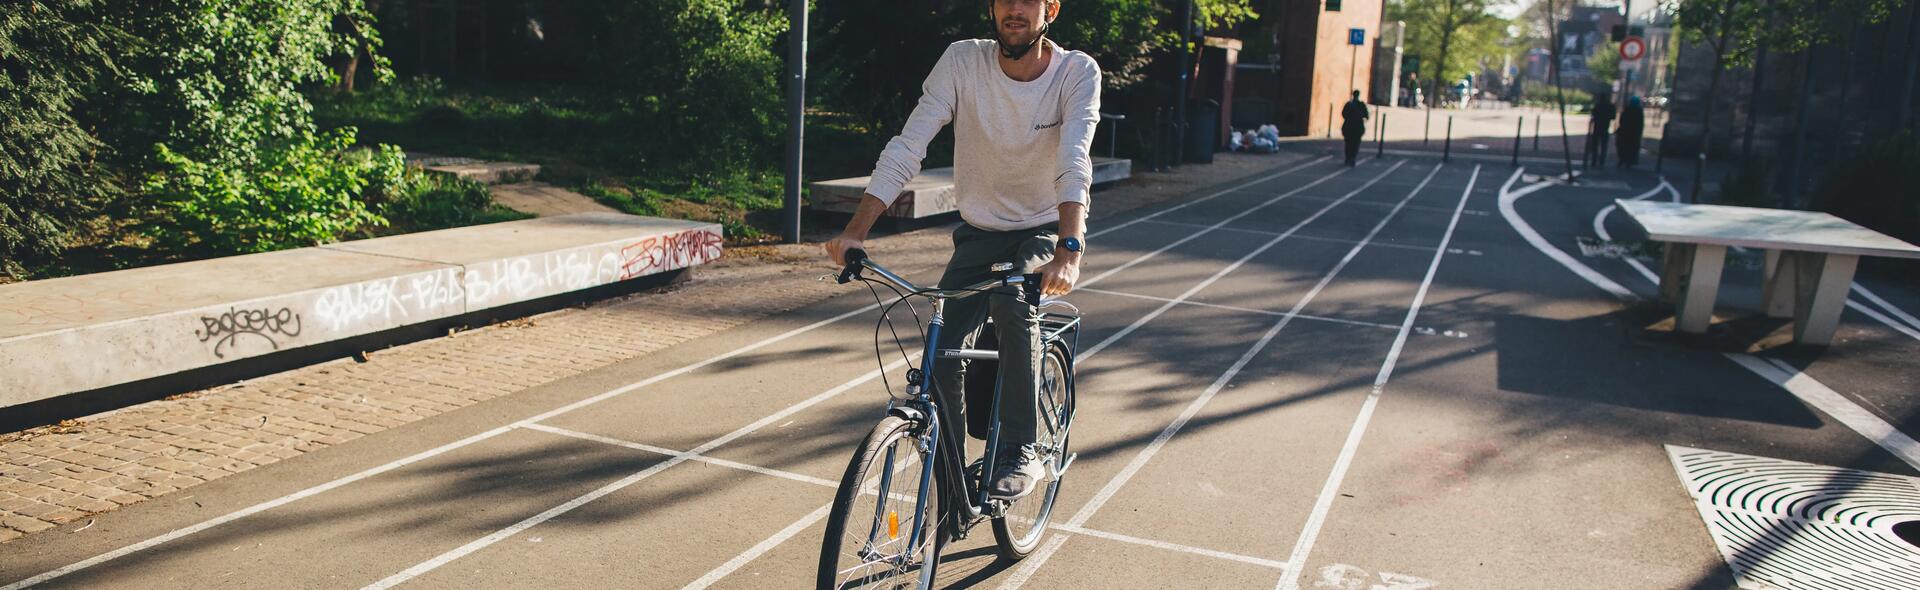 mężczyzna jadący na rowerze miejskim w kasku